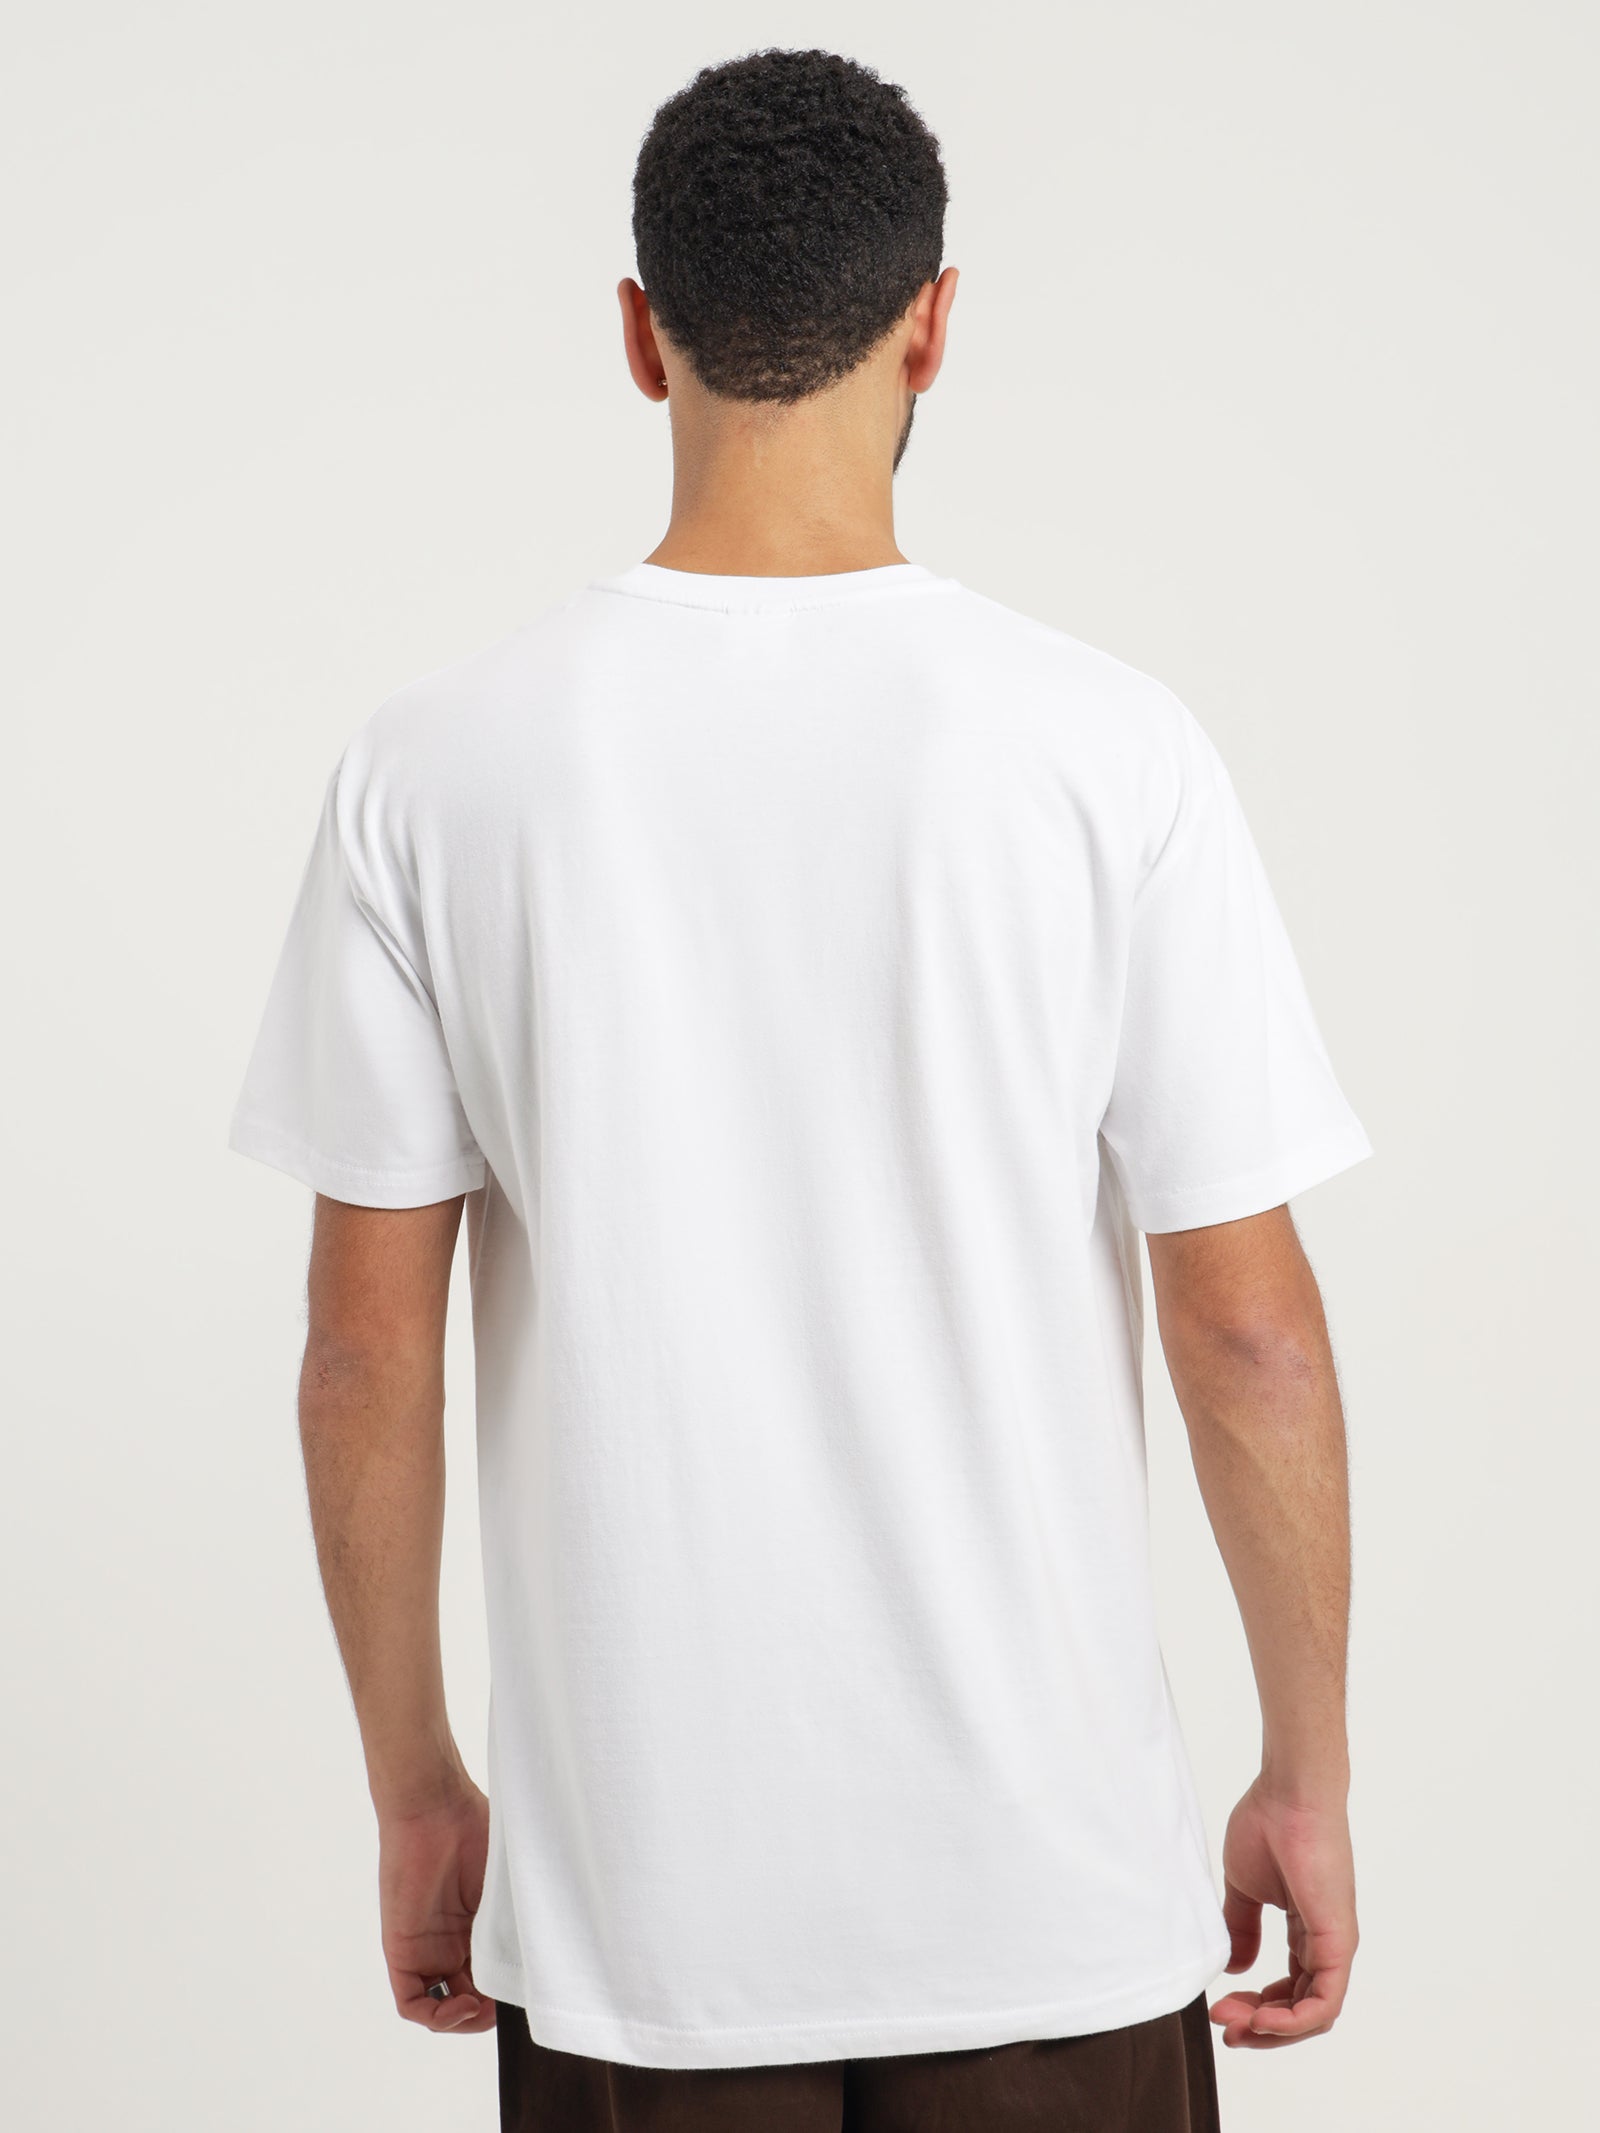 Scratch Man T-Shirt in White - Glue Store